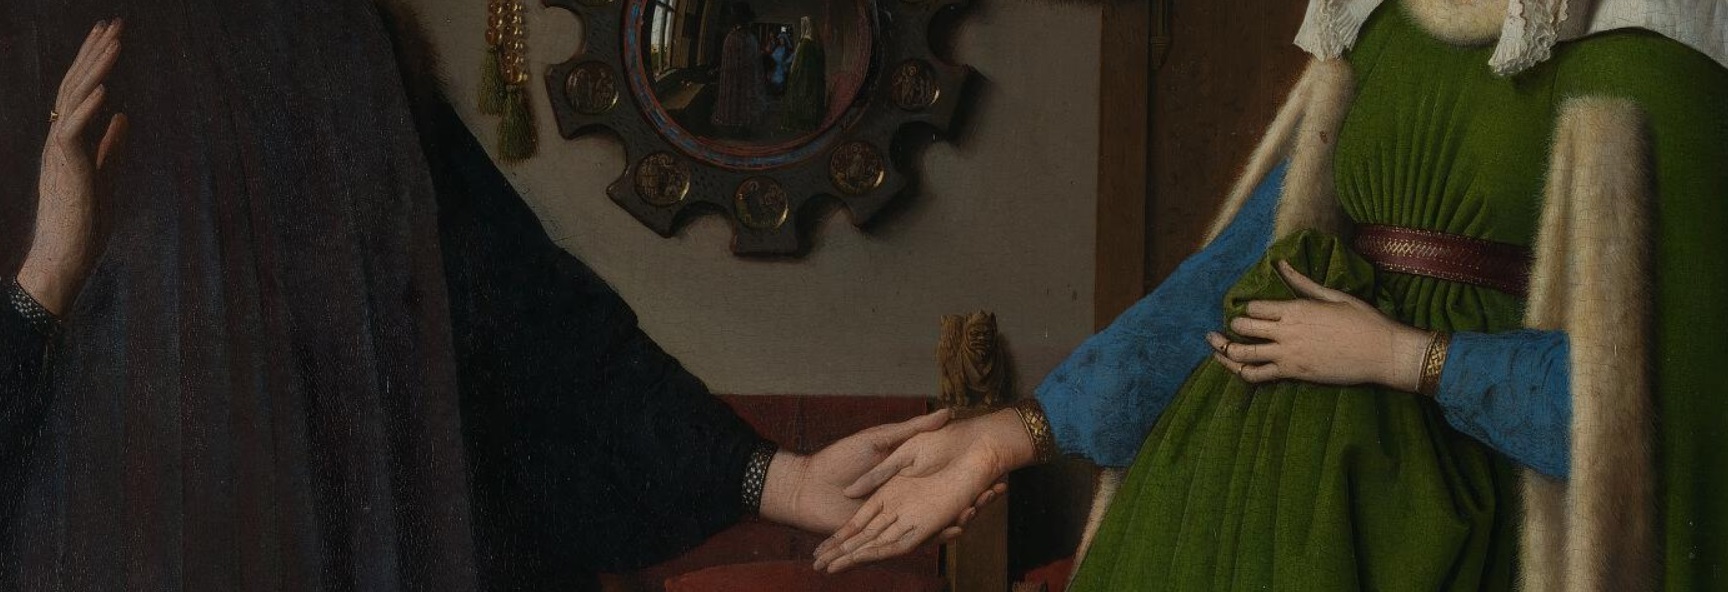 mariage morganatique, mariage de la main gauche, époux Arnolfini, van Eyck